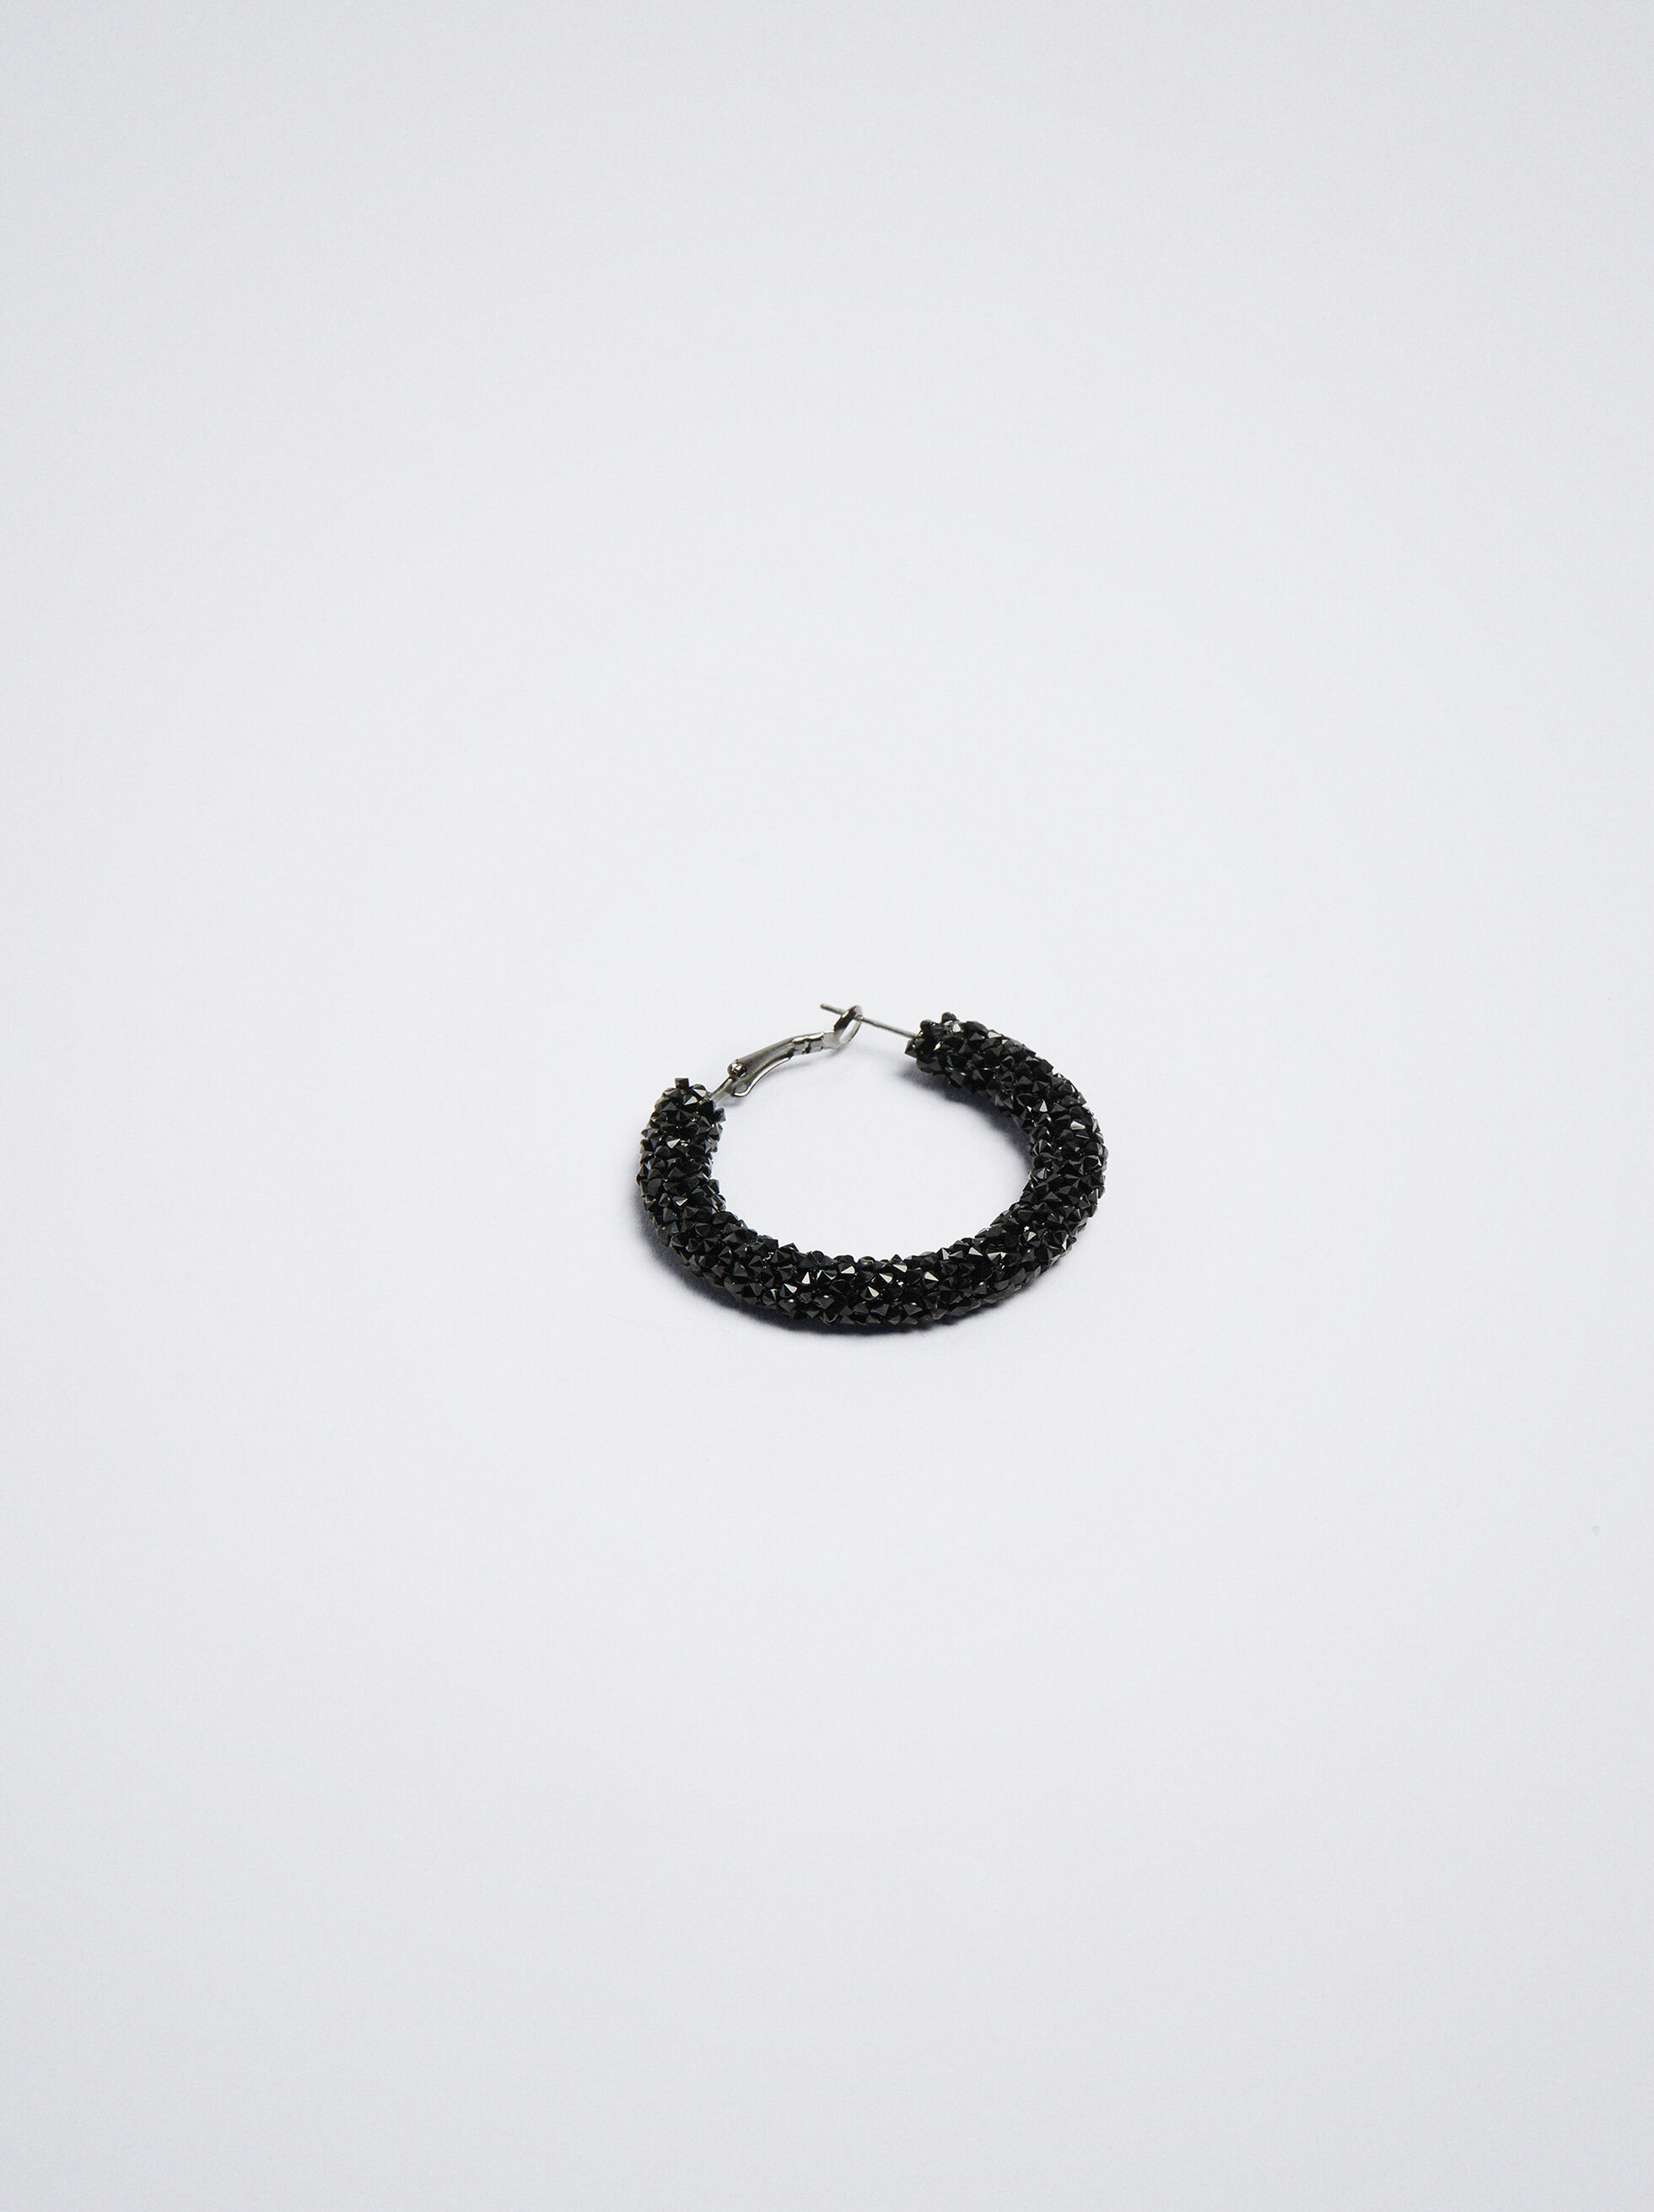 Amazon.com: Boderier Rhinestone Hoop Earrings for Women Black Crystal  Glitter Hoop Earrings Ear Drop Dangles (Black): Clothing, Shoes & Jewelry